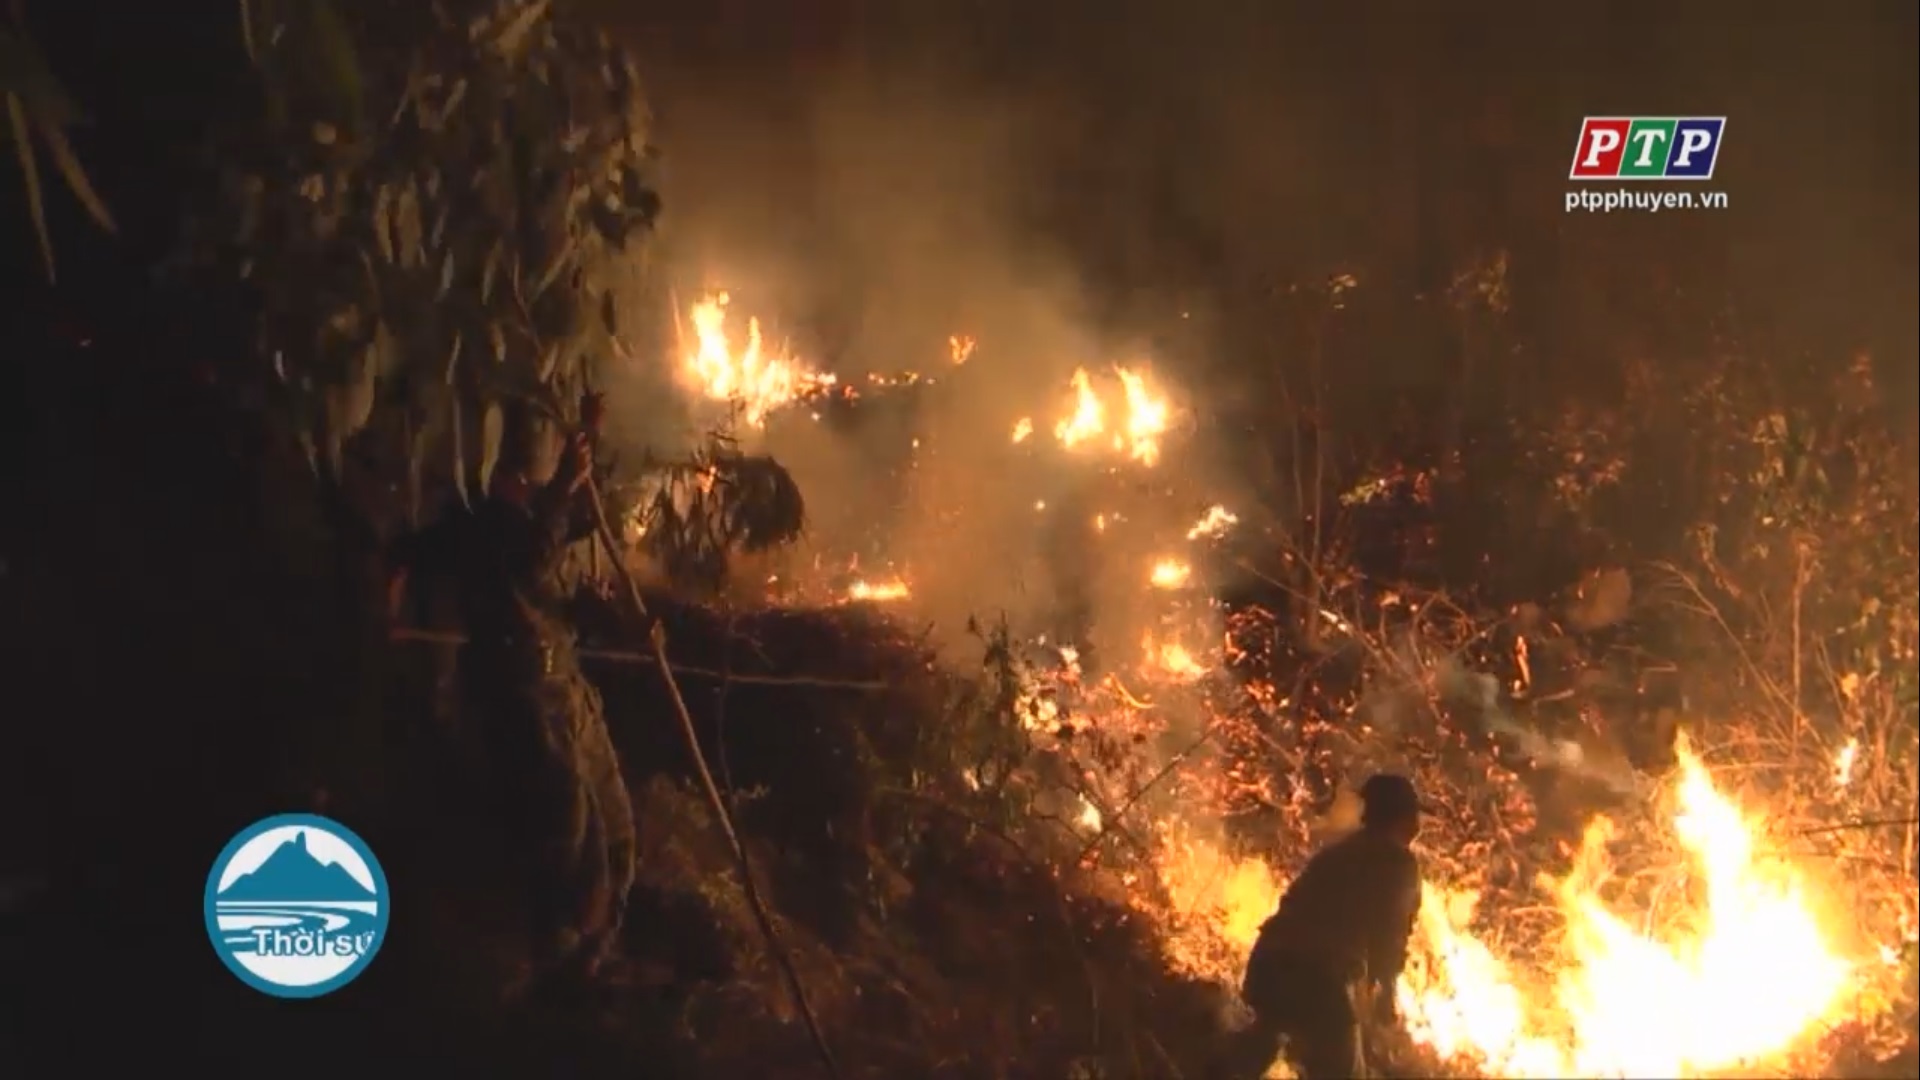 Duy trì lực lượng chữa cháy rừng trong đêm, khống chế được vụ cháy rừng kéo dài tại Phú Yên